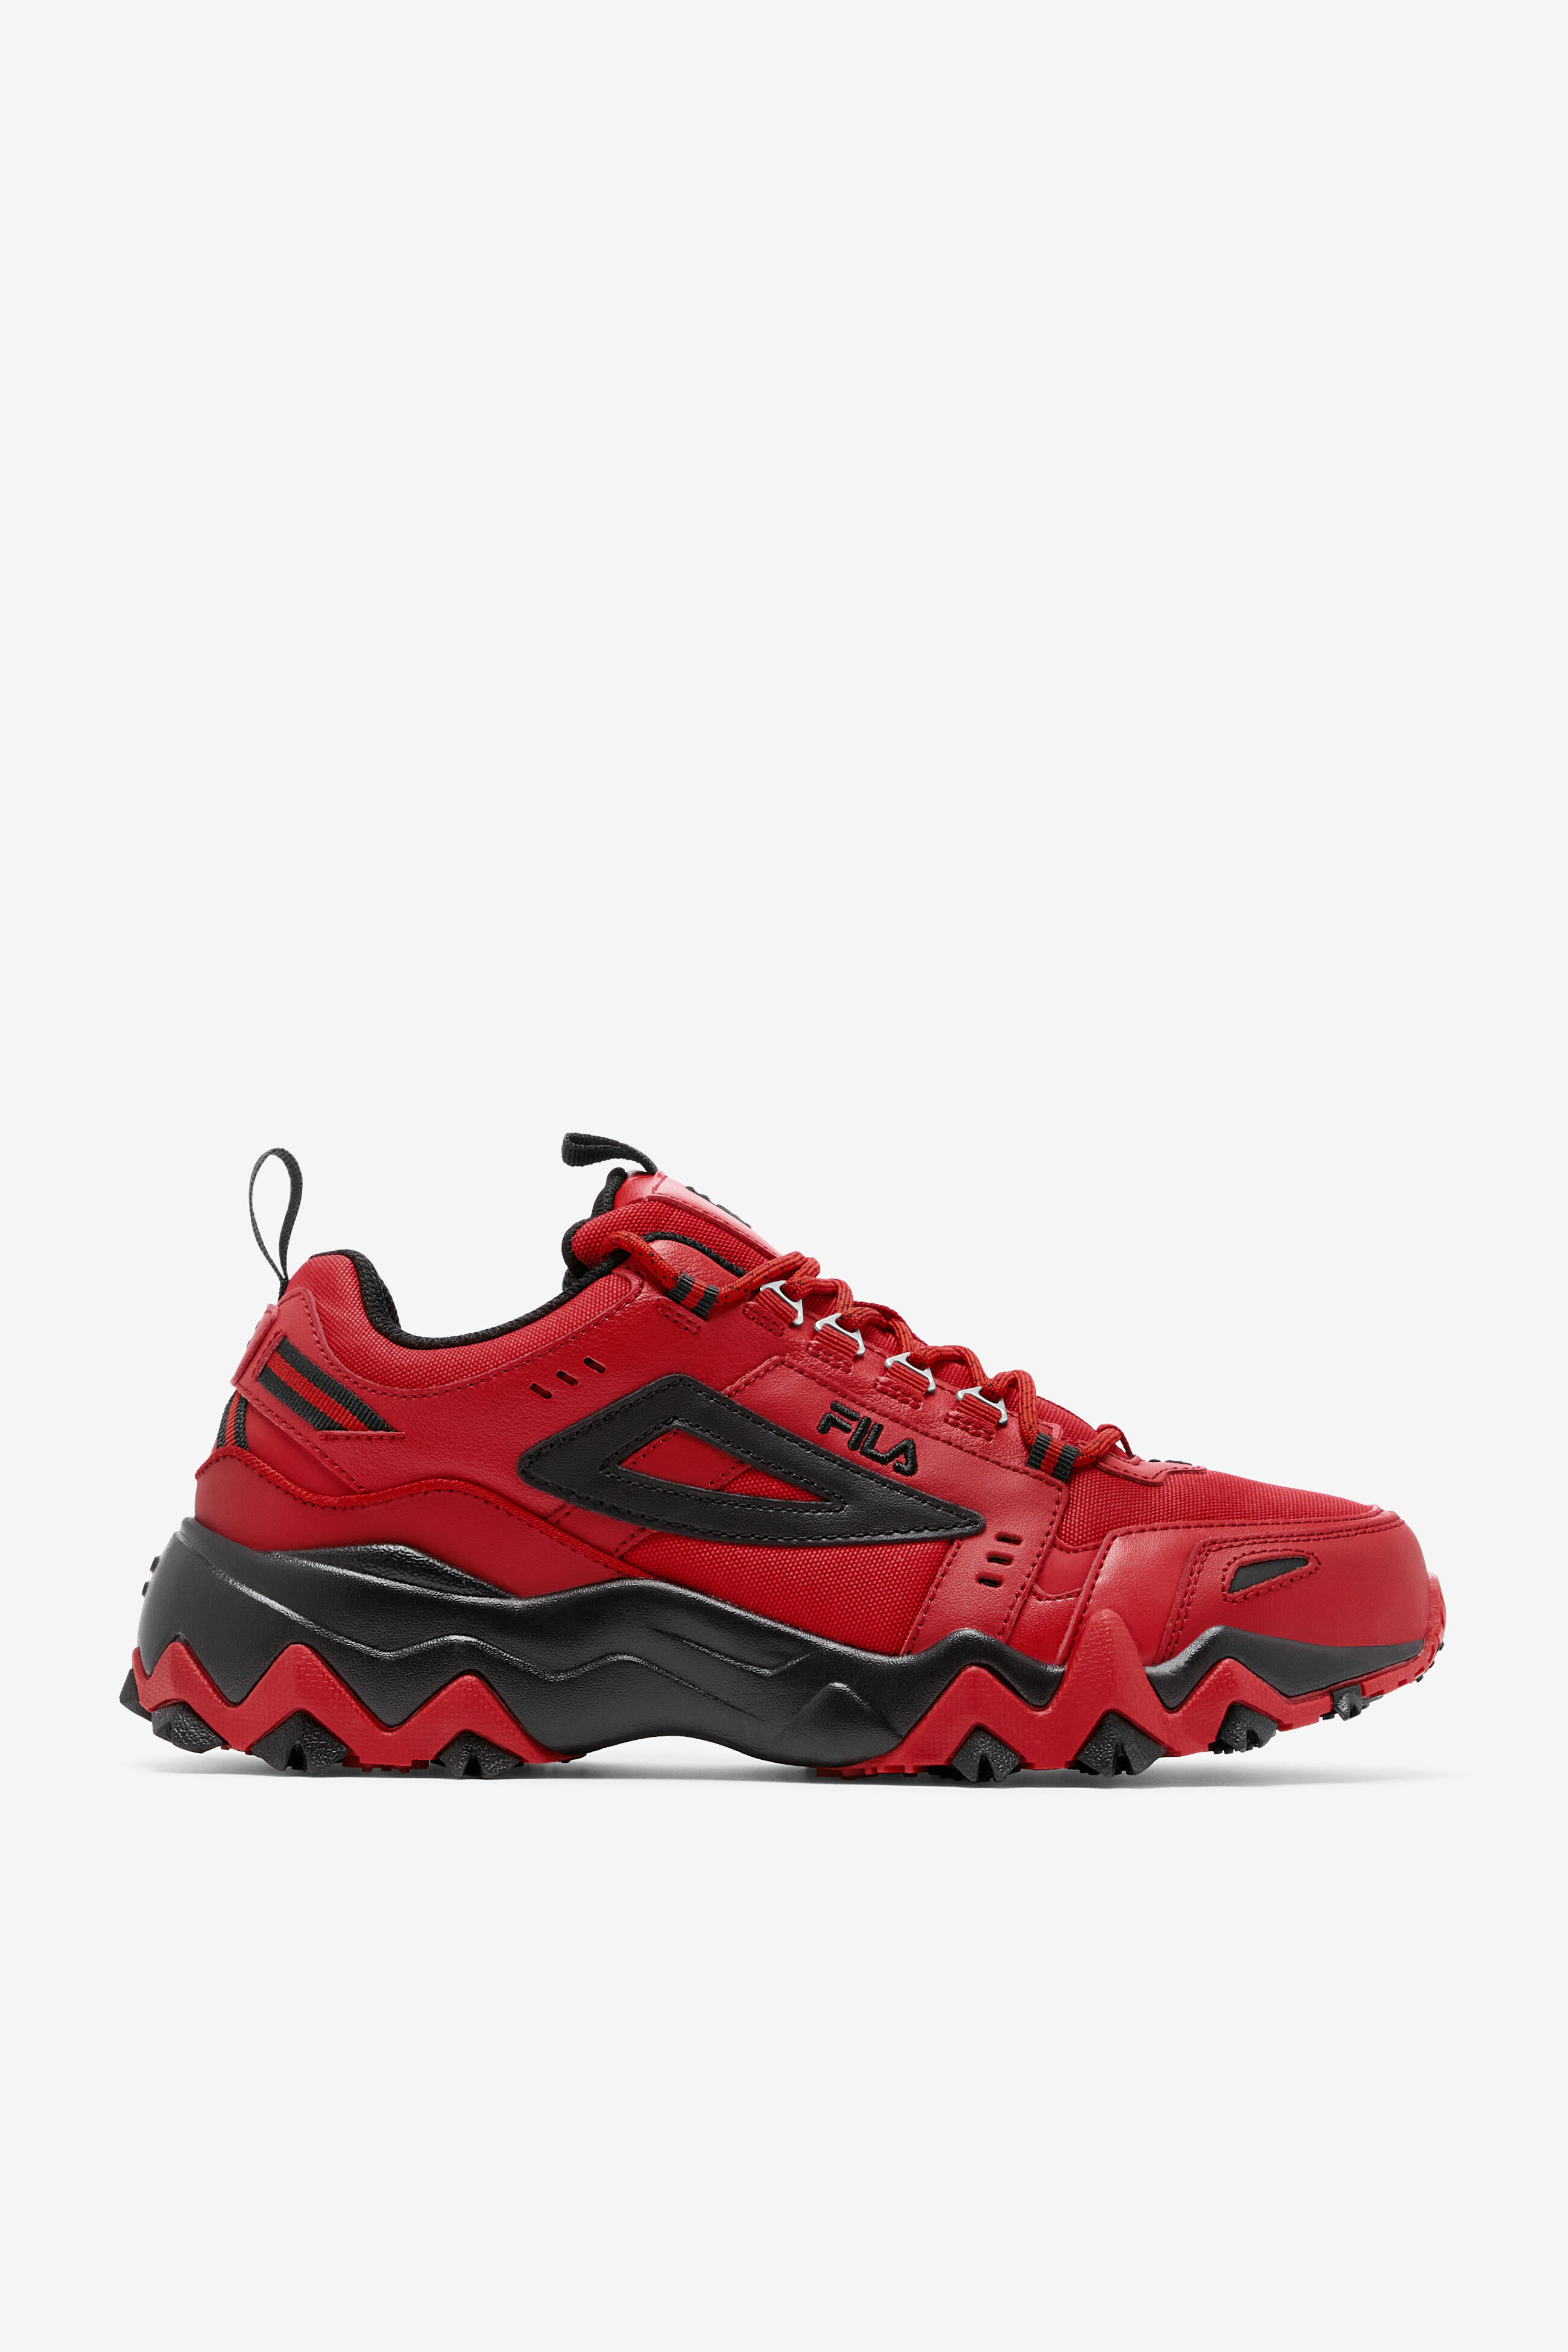 Amazon.com | Fila Men's A-Low Sneaker, Black/Red/White, 7 | Fashion Sneakers